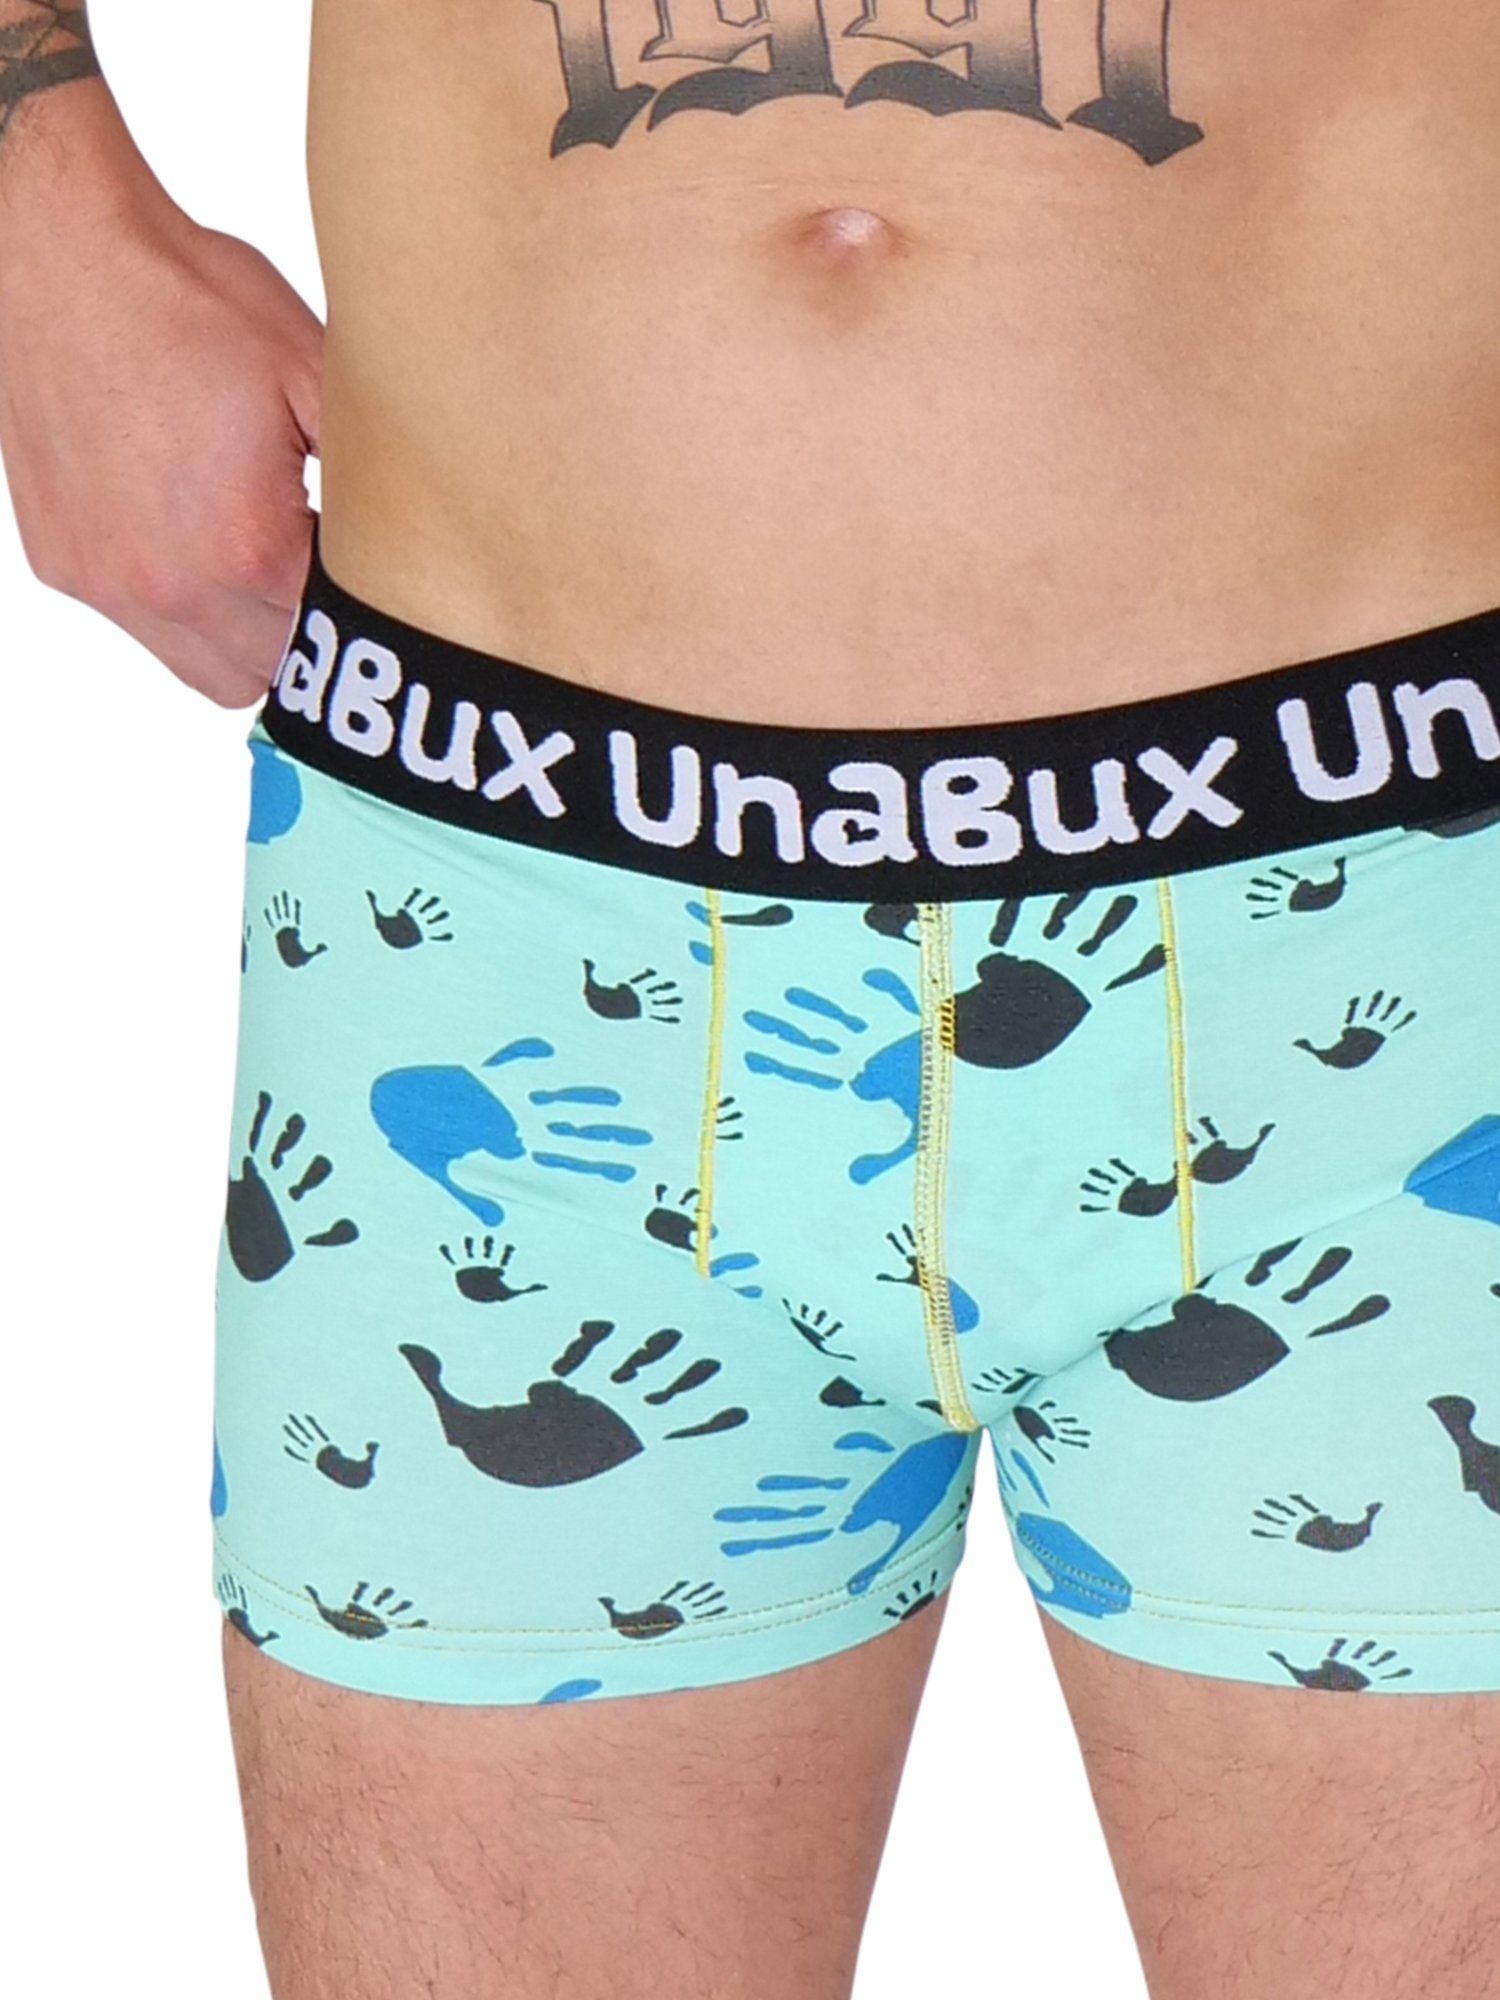 UnaBux (2-St) GOOD OLD Boxer Mix ANCHOR FIVE Retro Pants FINGERS Briefs